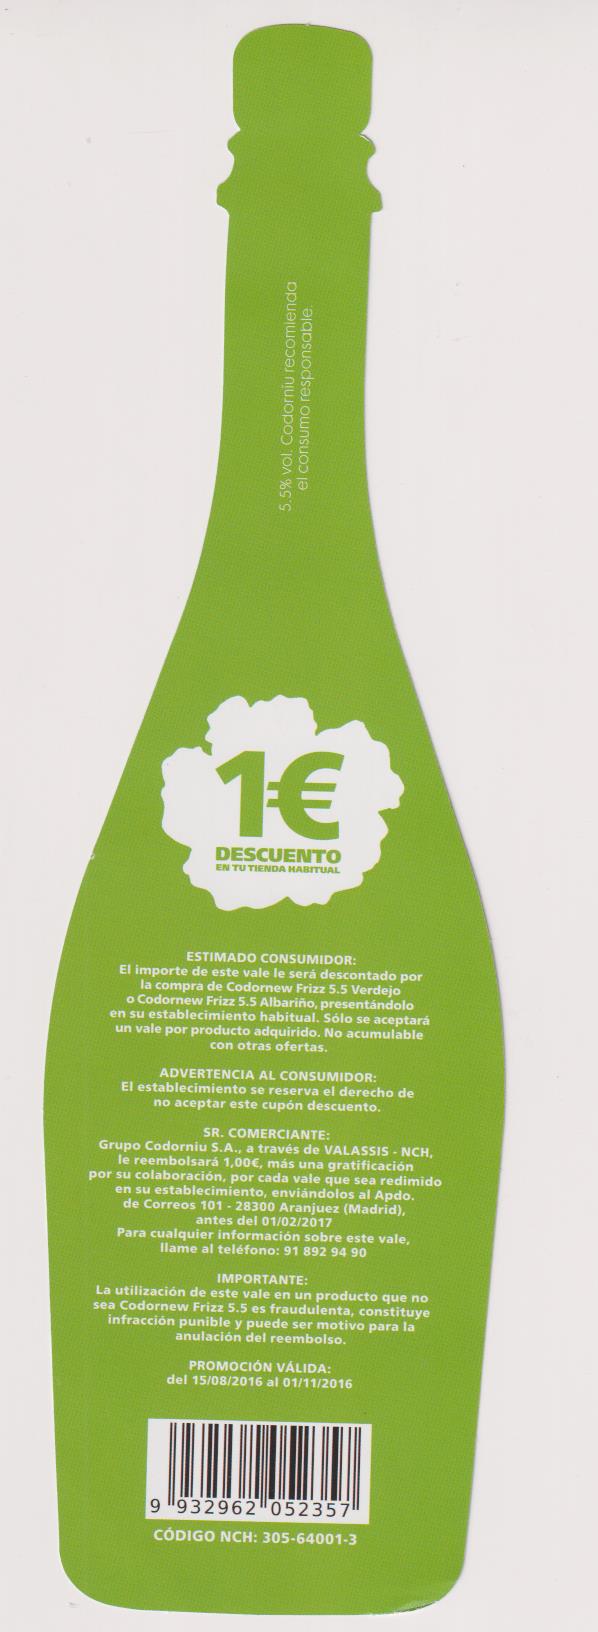 Botella, Cartulina (27x8) Frizz 5.5 Verdejo Codor New.Al dorso Descuento 1 Euro